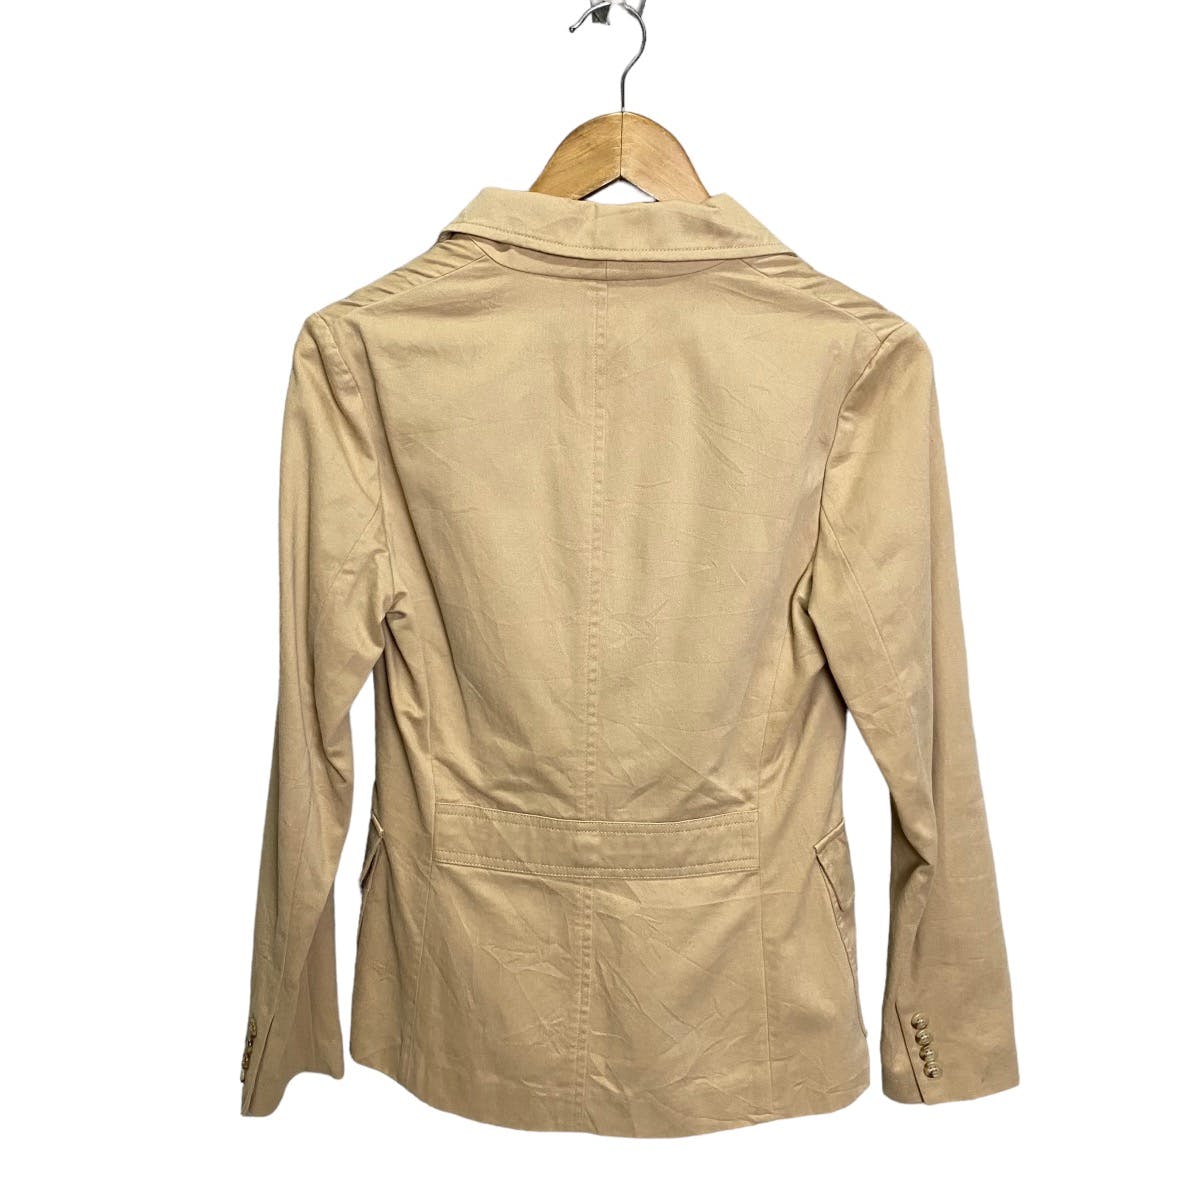 Ralph Lauren 4 pocket jacket - 4